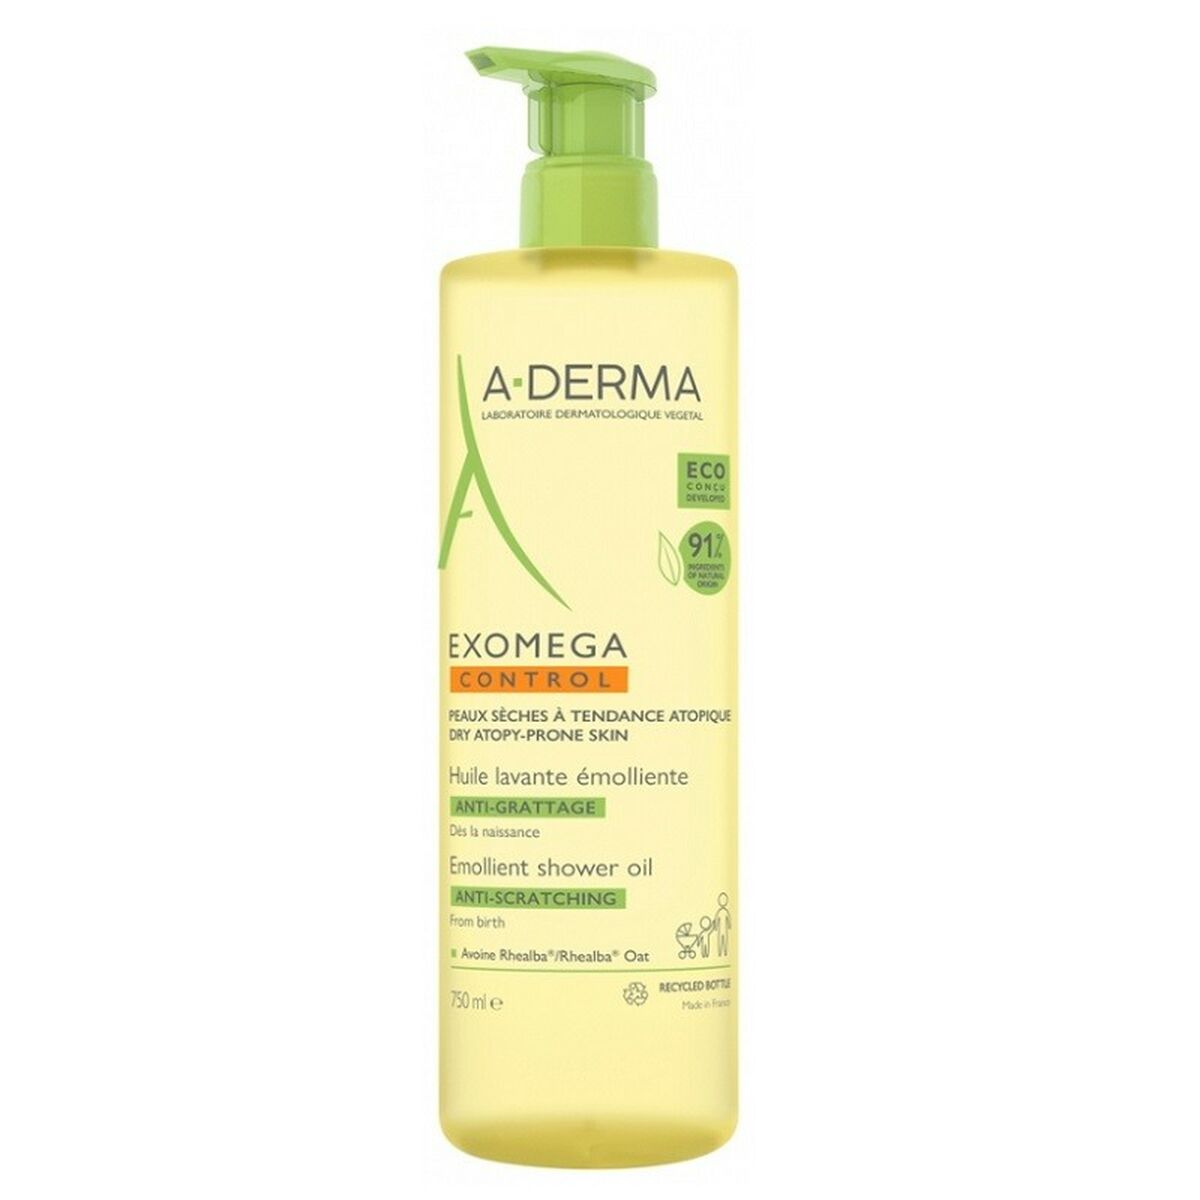 Sonnenschutzcreme für das Gesicht A-Derma Exomega Control Pvp 750 ml